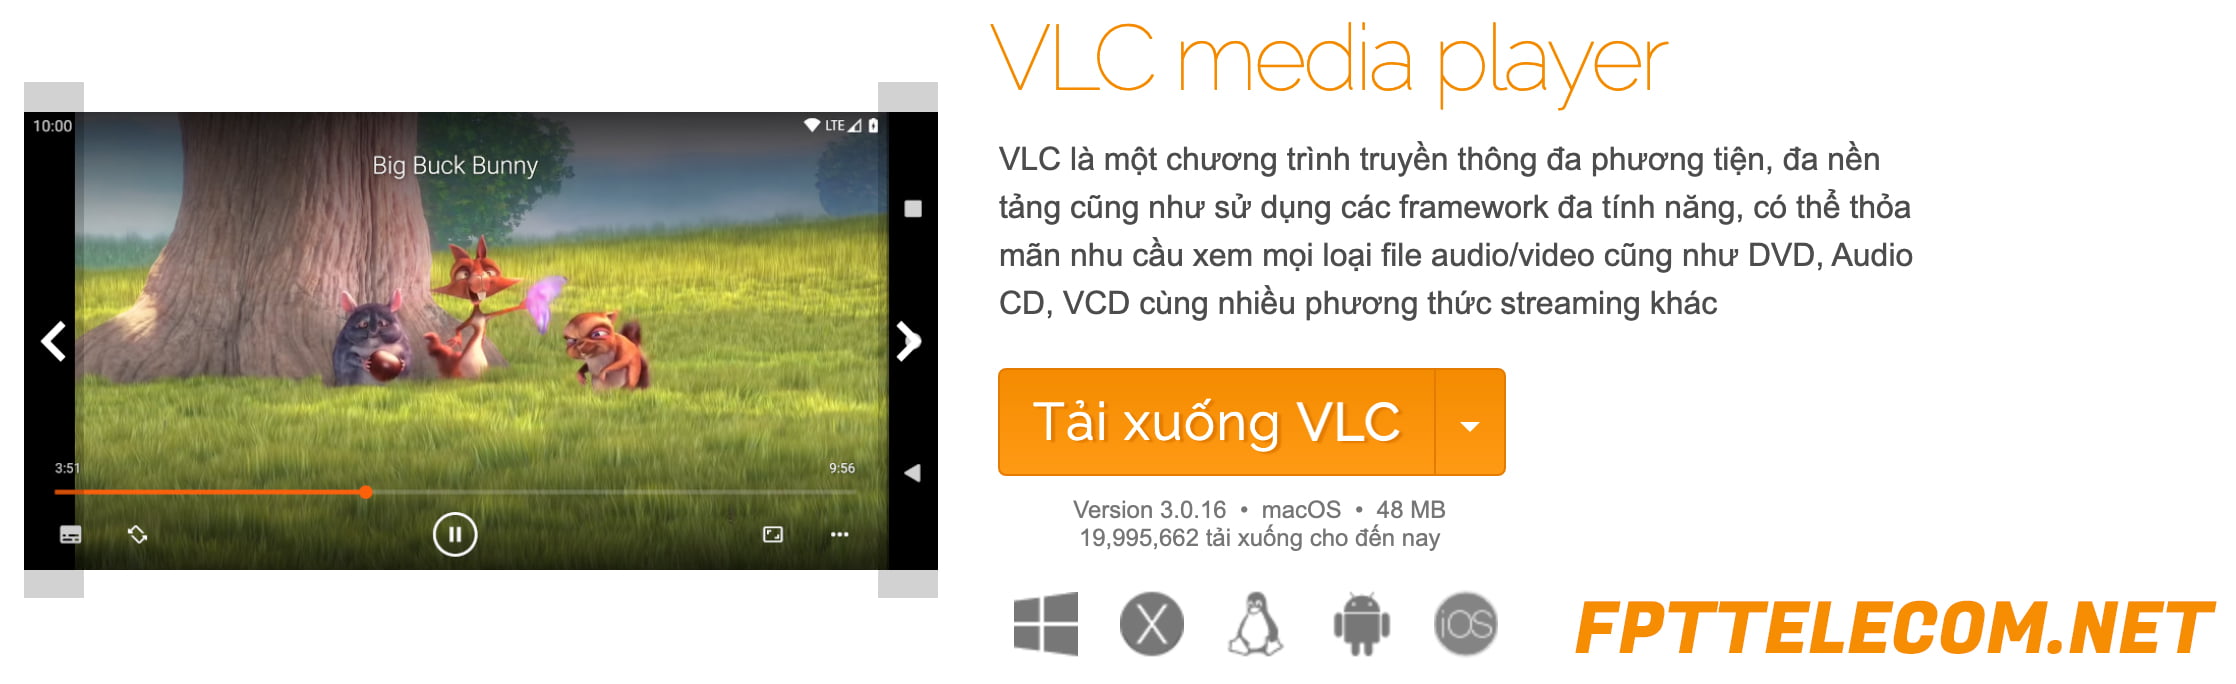 Tải xuống phần mềm VLC